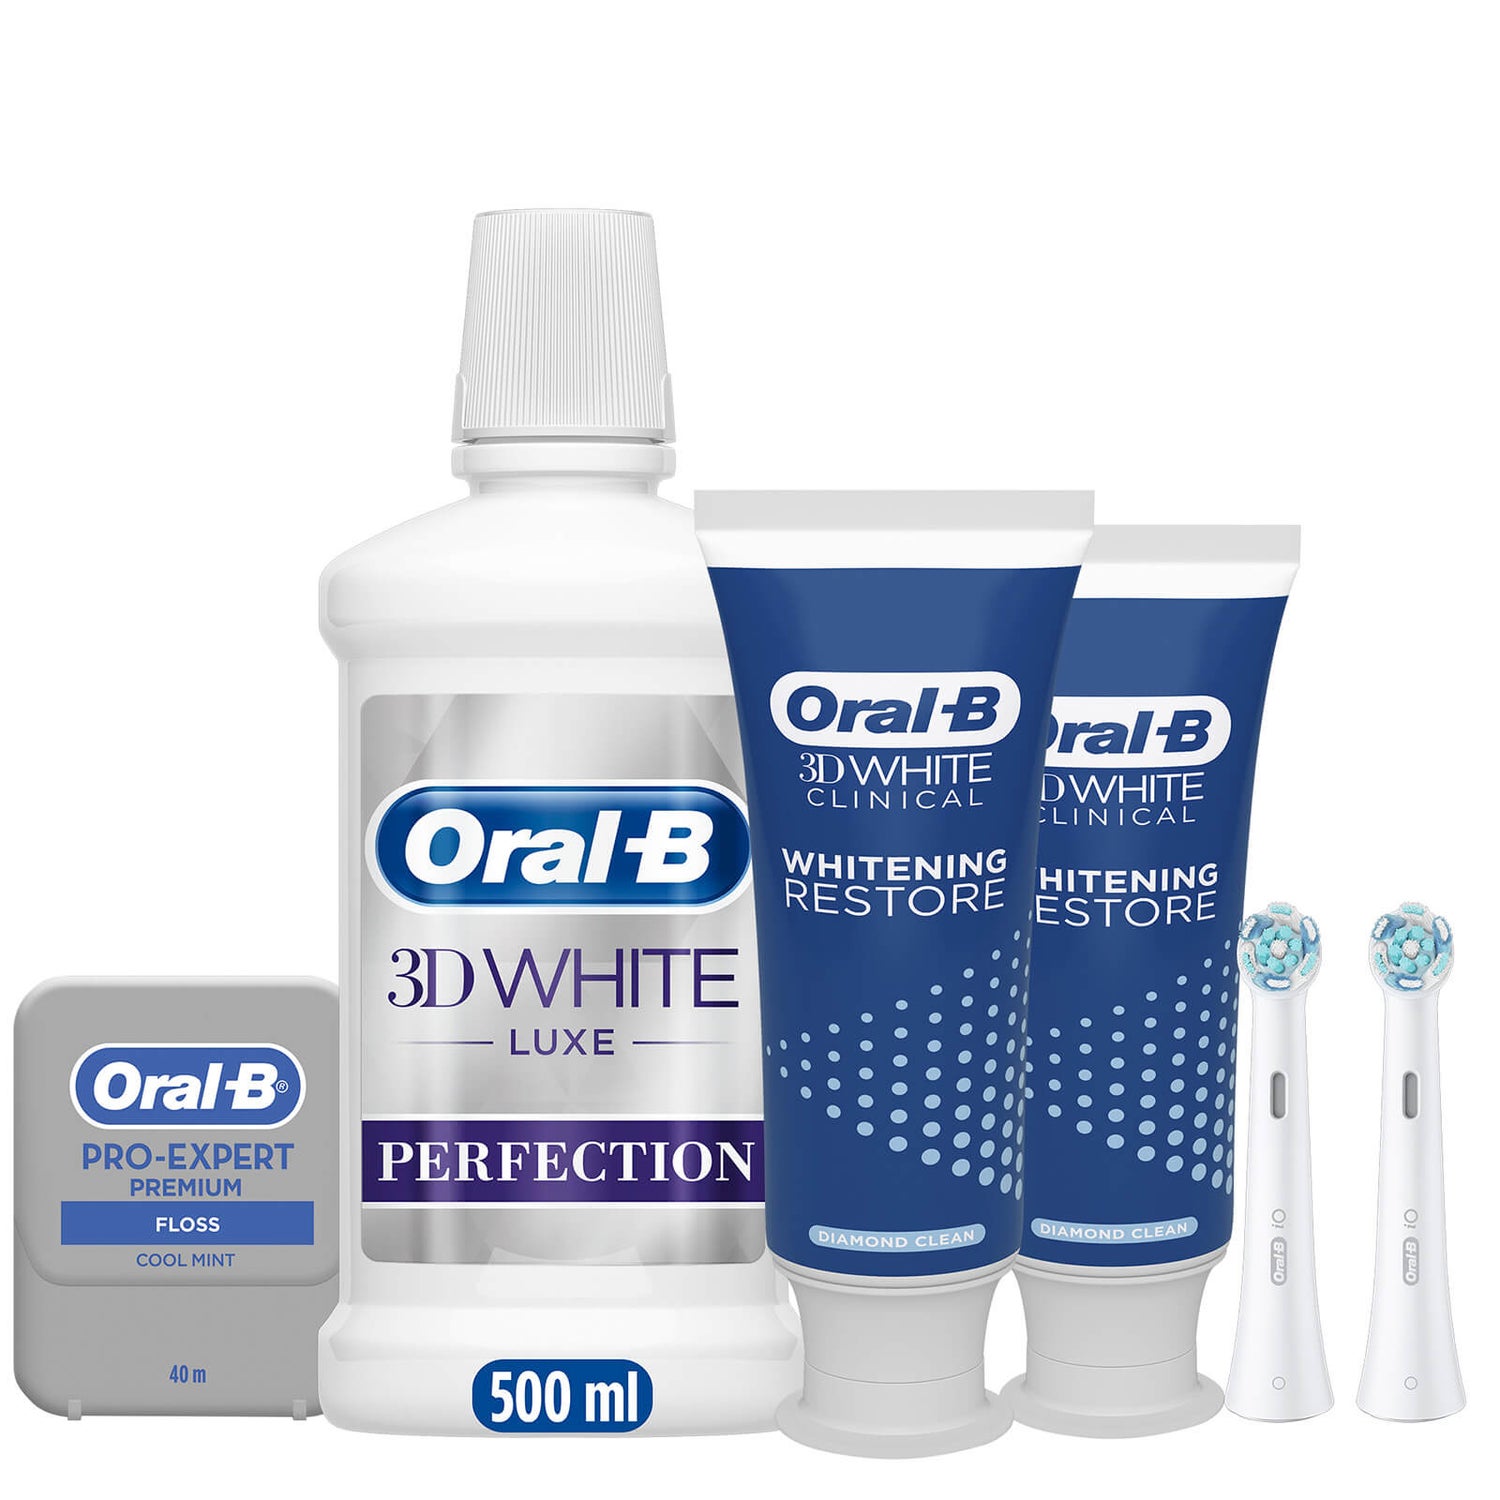 Oral-B Io Ultmate Clean 3D White Clinical Diamond Bundle